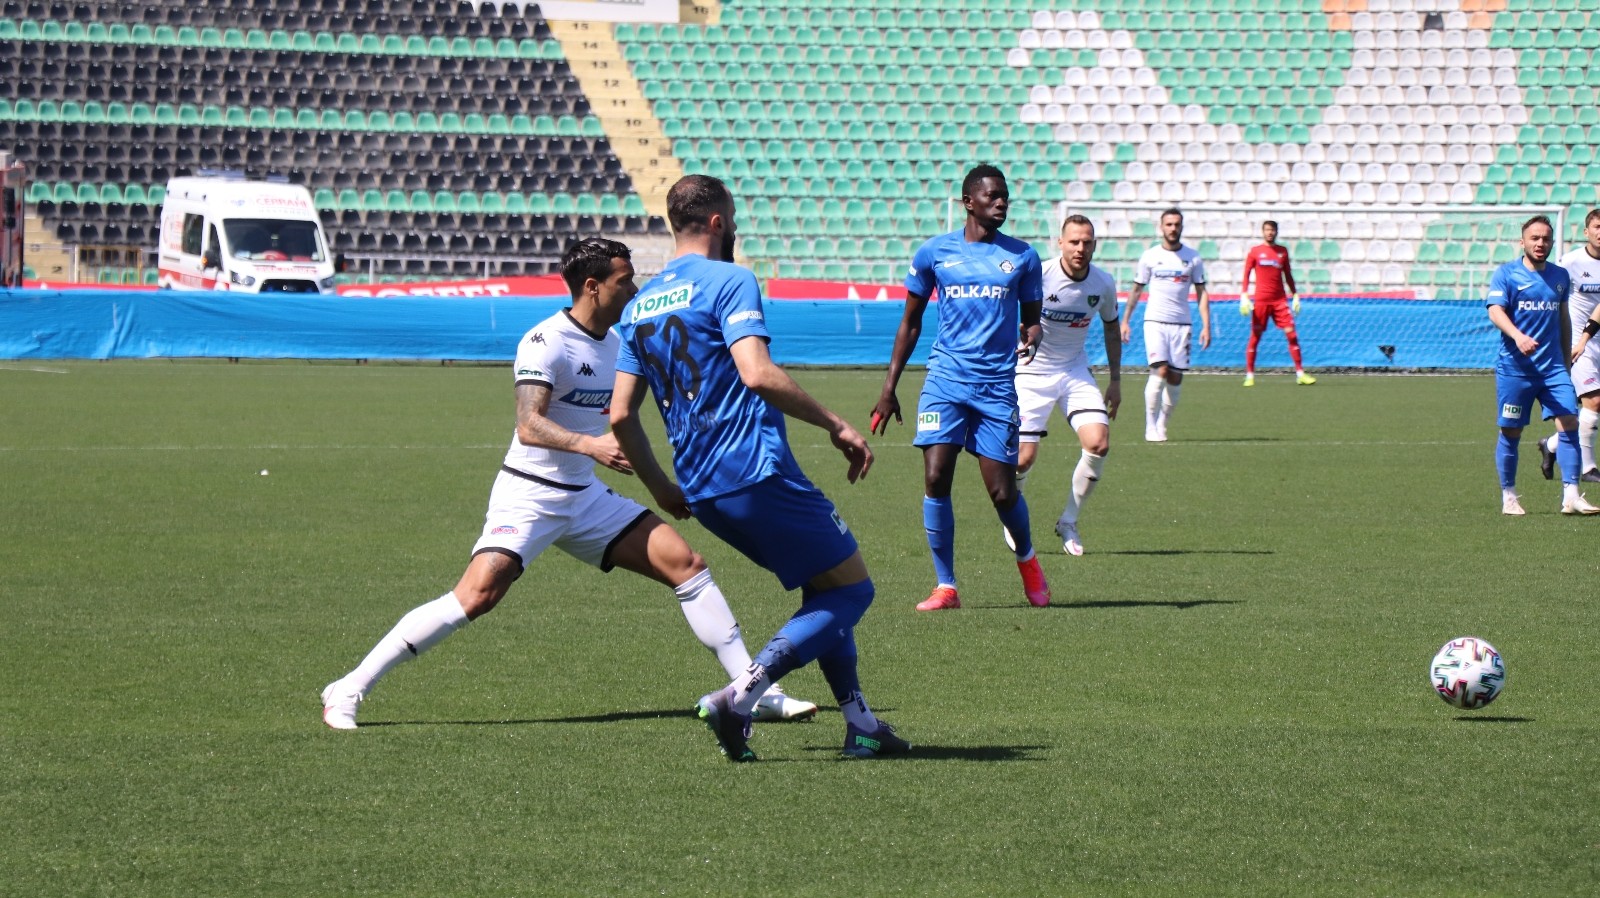 Denizlispor: 2 - Altay Spor Kulübü: 3
